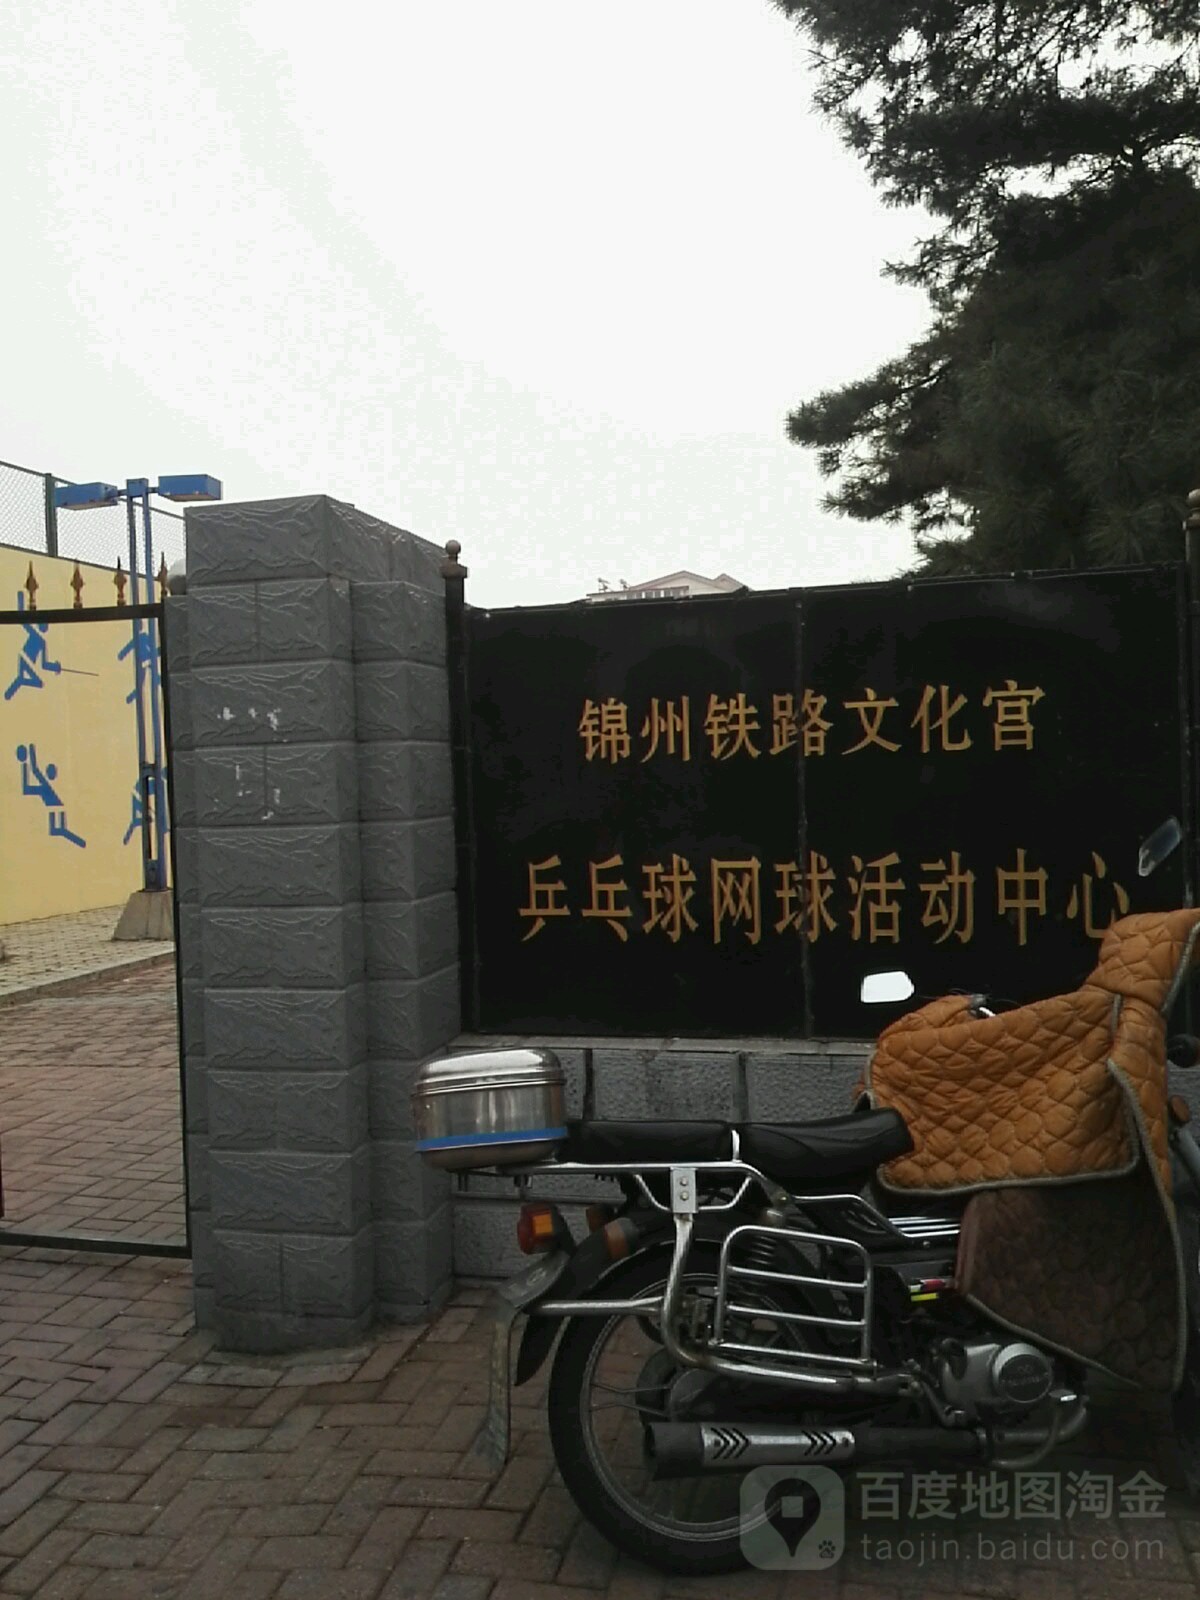 锦州铁路文化宫乒乓球网球活动中心